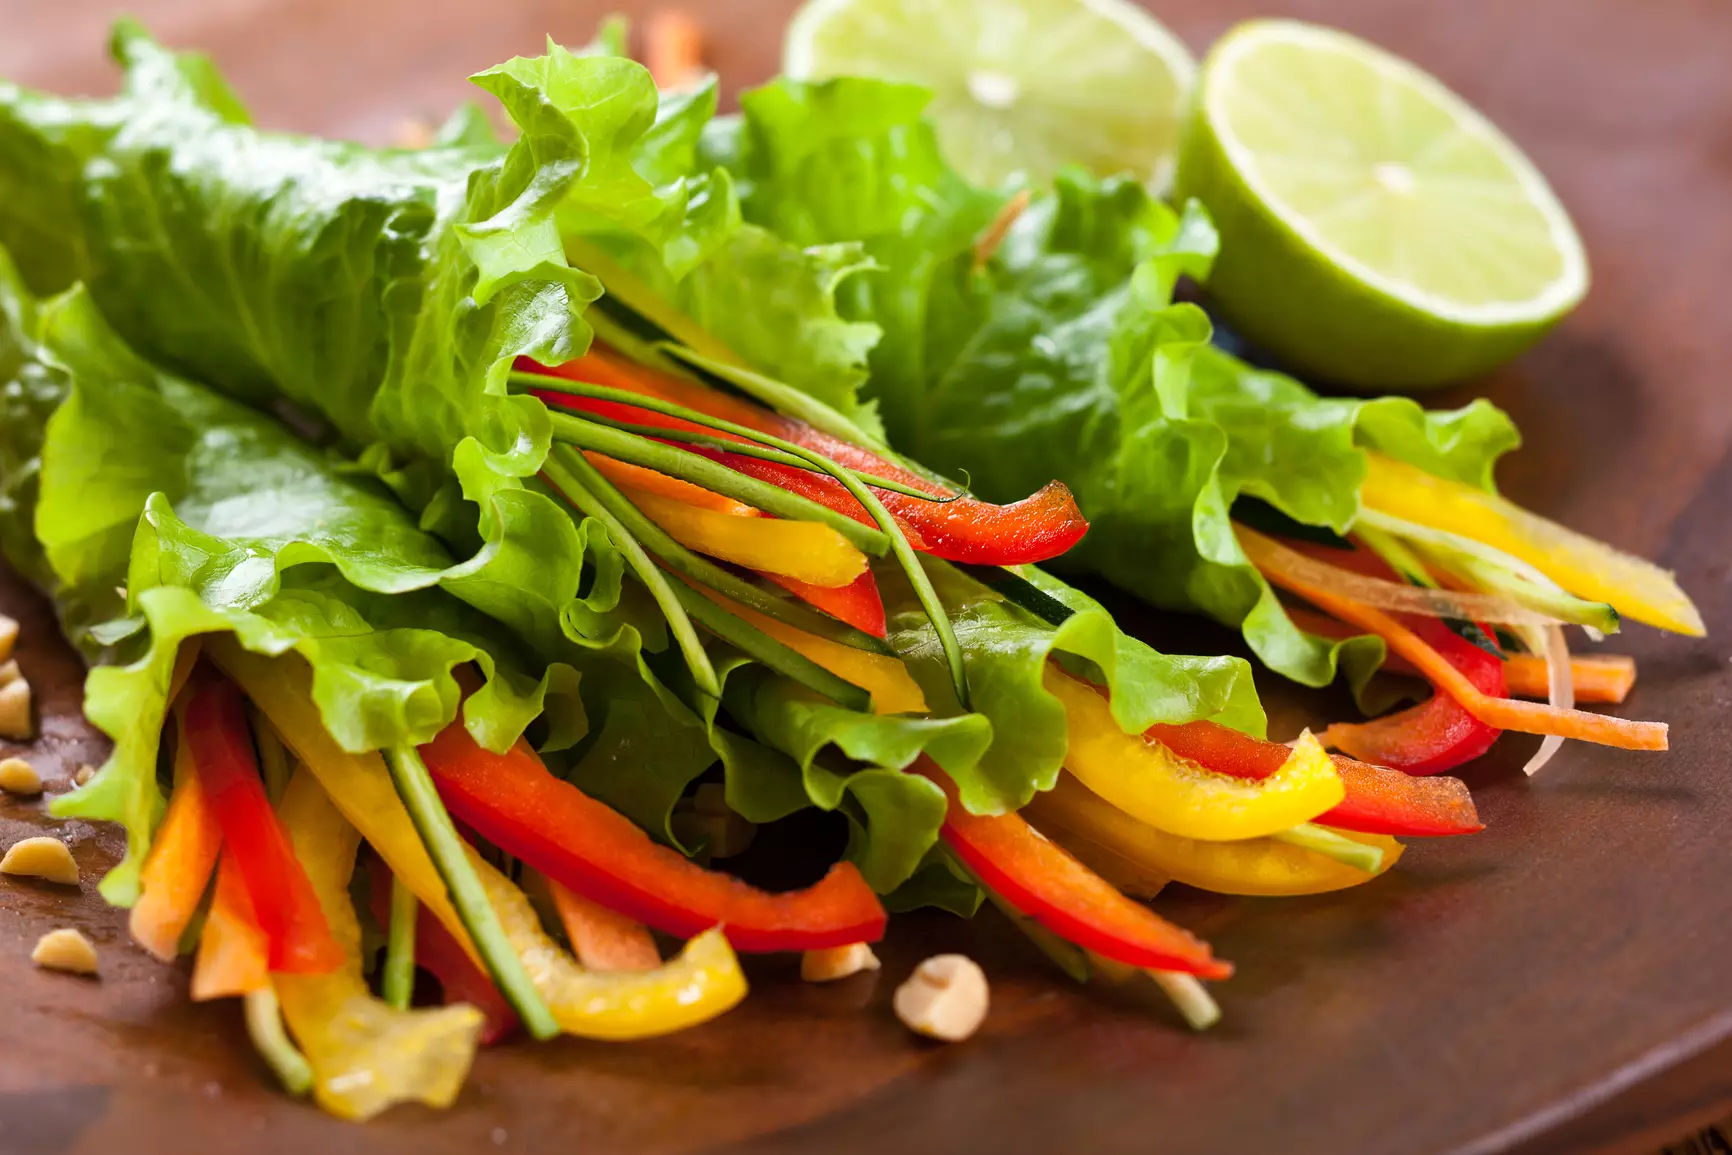 Овощи в салатных листьях удобно есть на природе